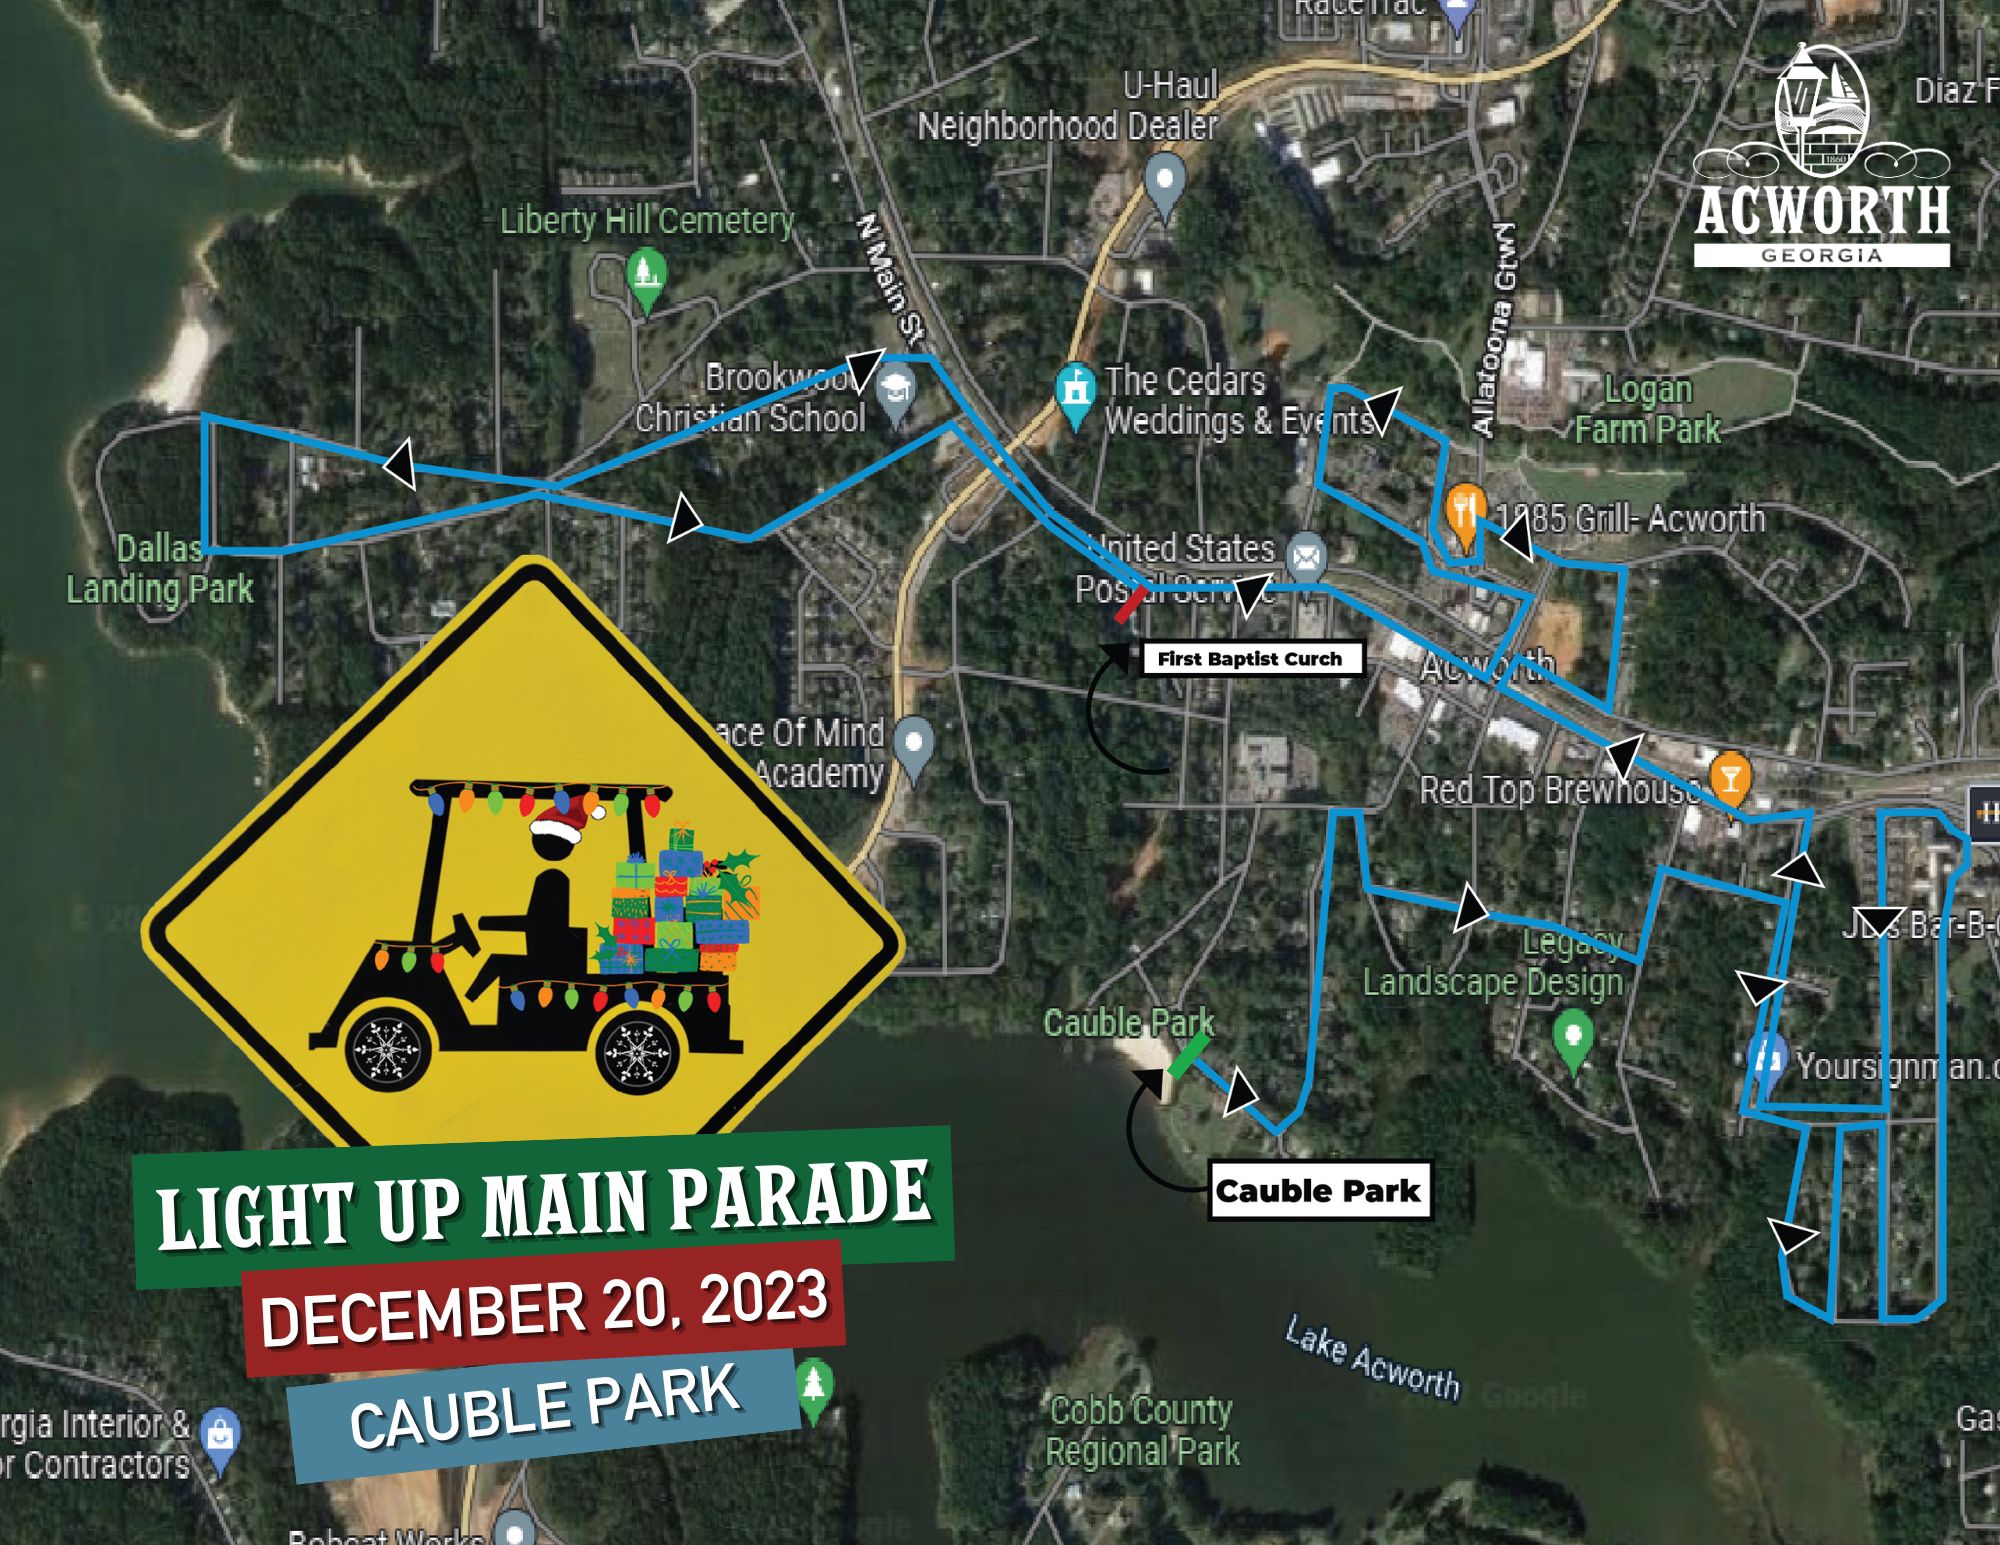 Image 2023 Light Up Main Golf Cart Parade Map